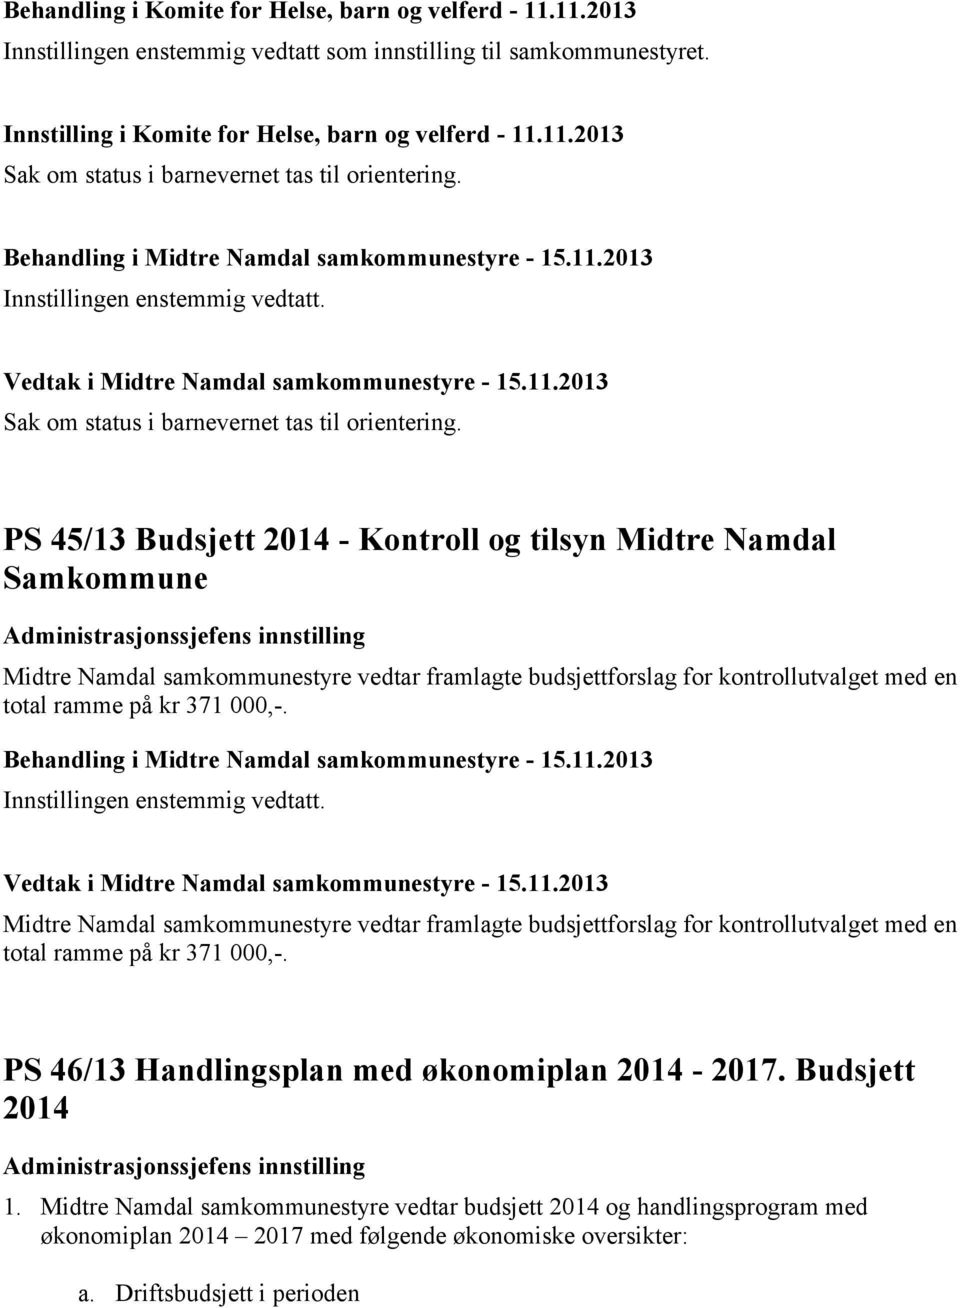 PS 45/13 Budsjett 2014 - Kontroll og tilsyn Midtre Namdal Samkommune Midtre Namdal samkommunestyre vedtar framlagte budsjettforslag for kontrollutvalget med en total ramme på kr 371 000,-.